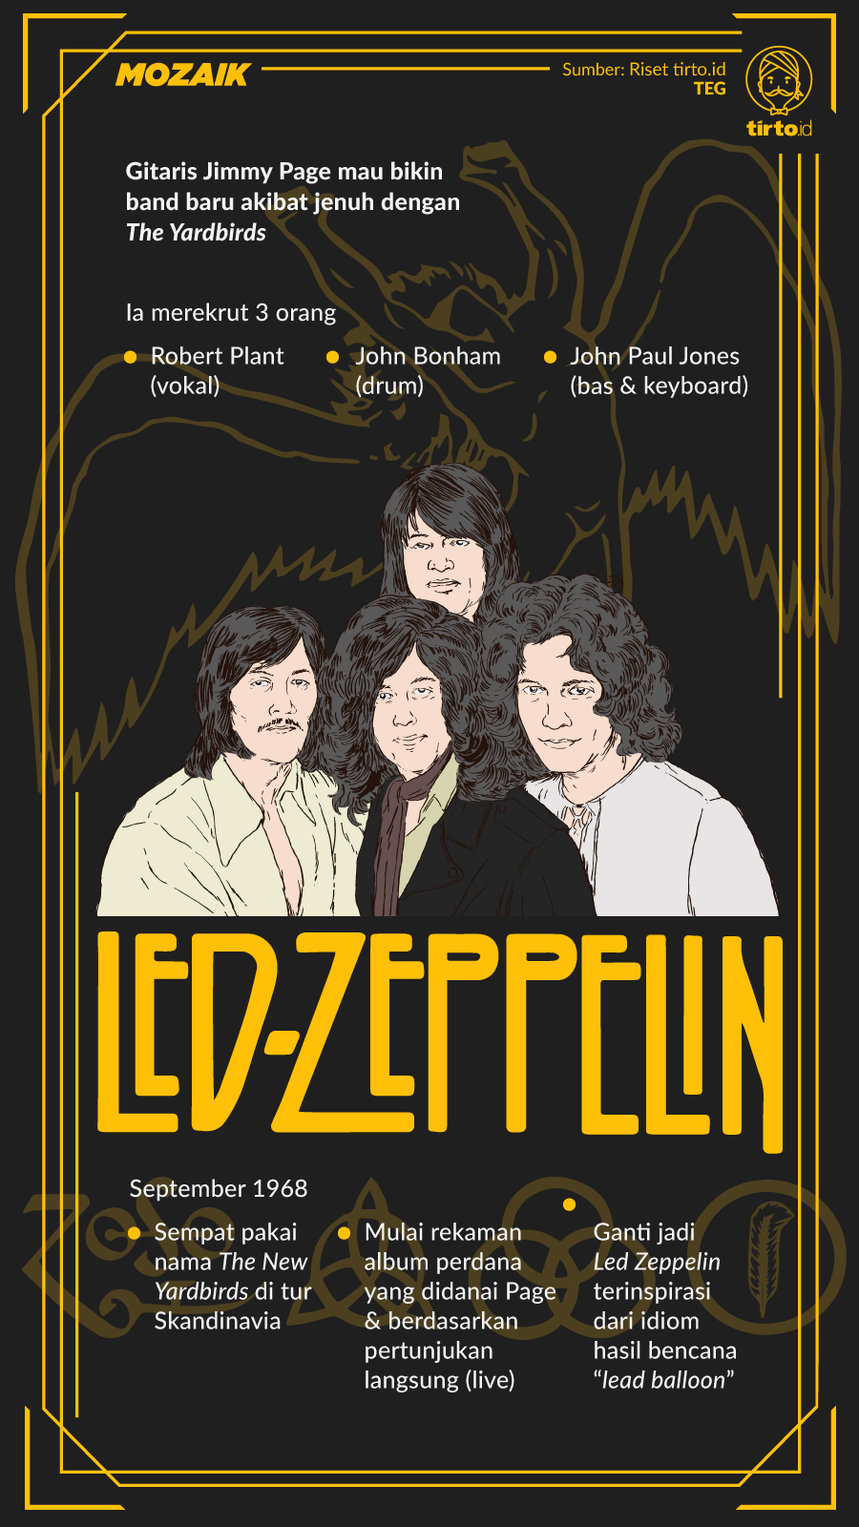 Infografik Mozaik Led Zeppelin